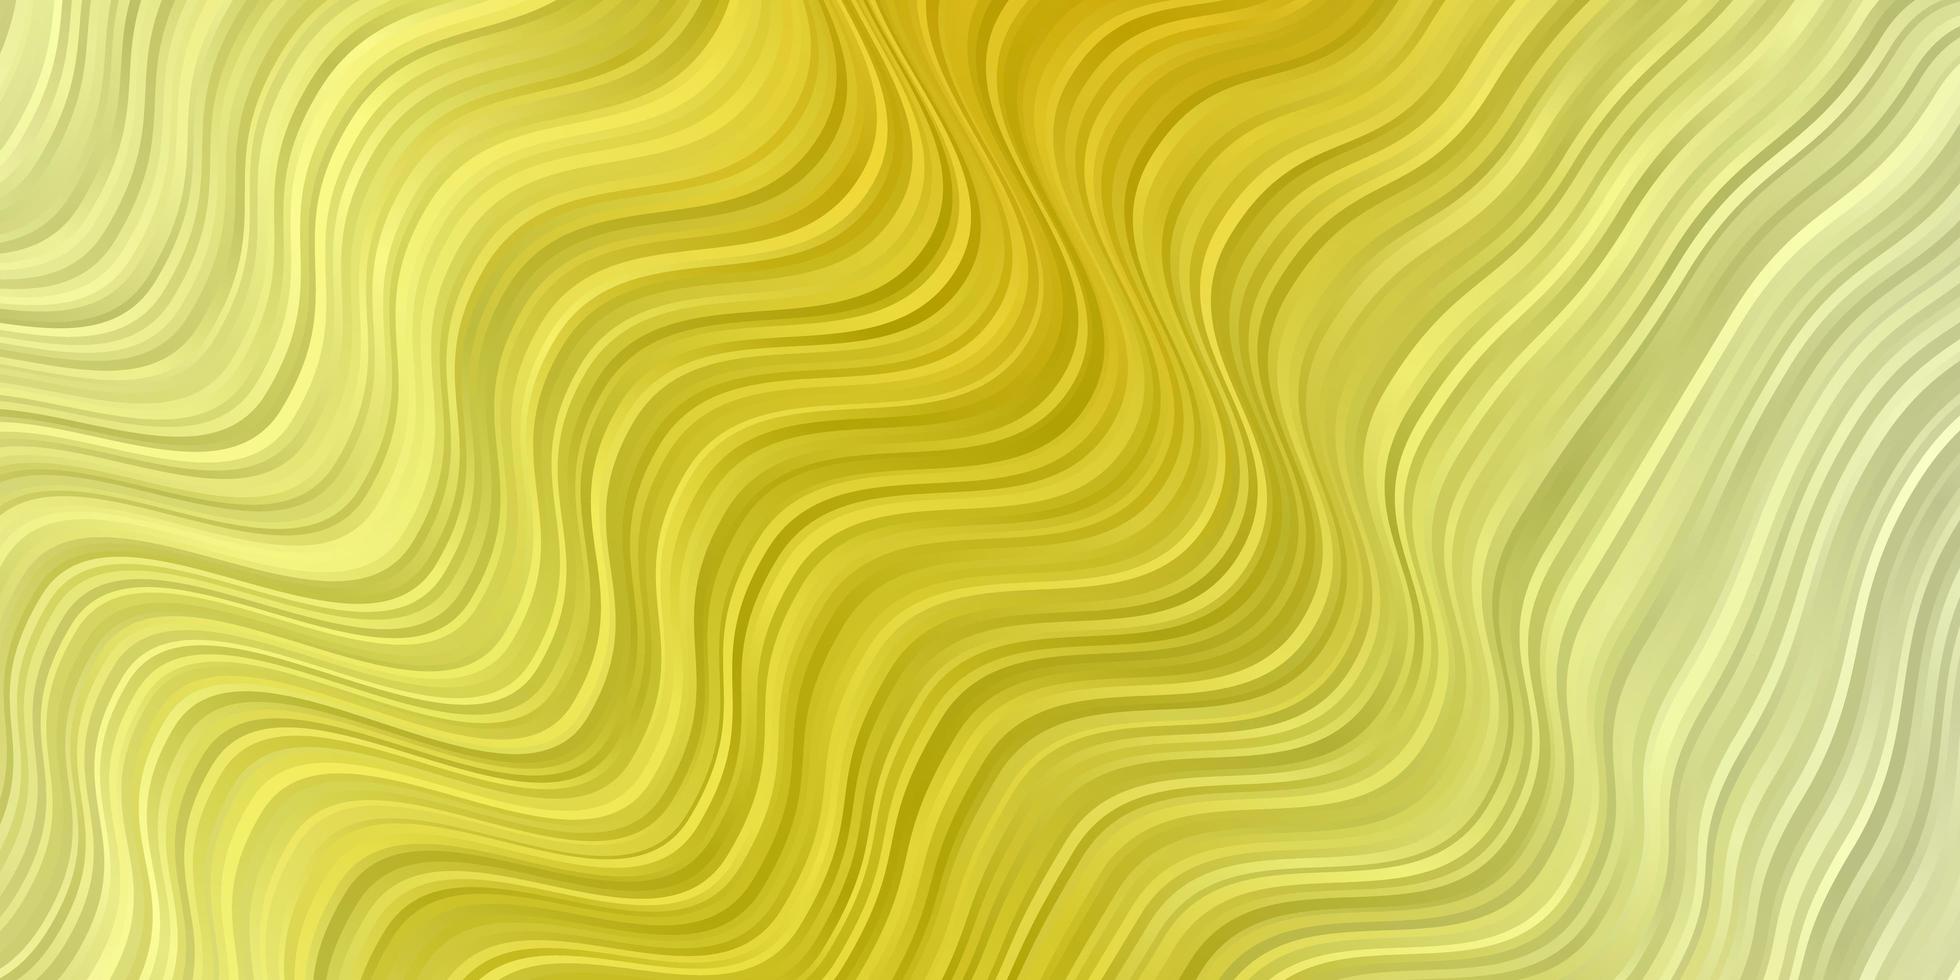 hellgrüner, gelber Vektorhintergrund mit Kurven. vektor